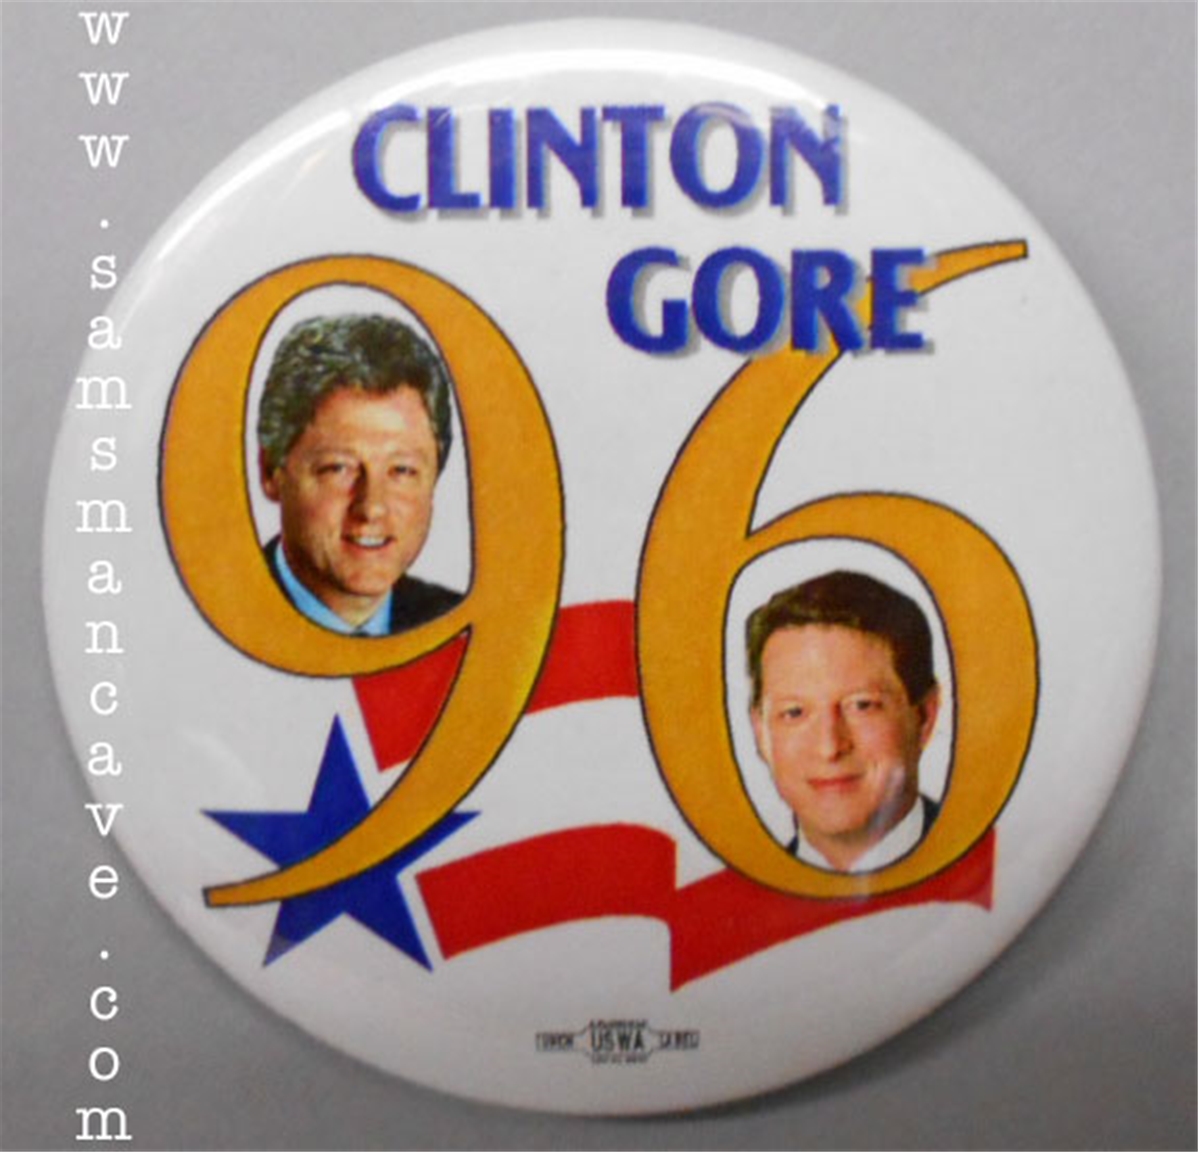 1996 Clinton Gore Pin